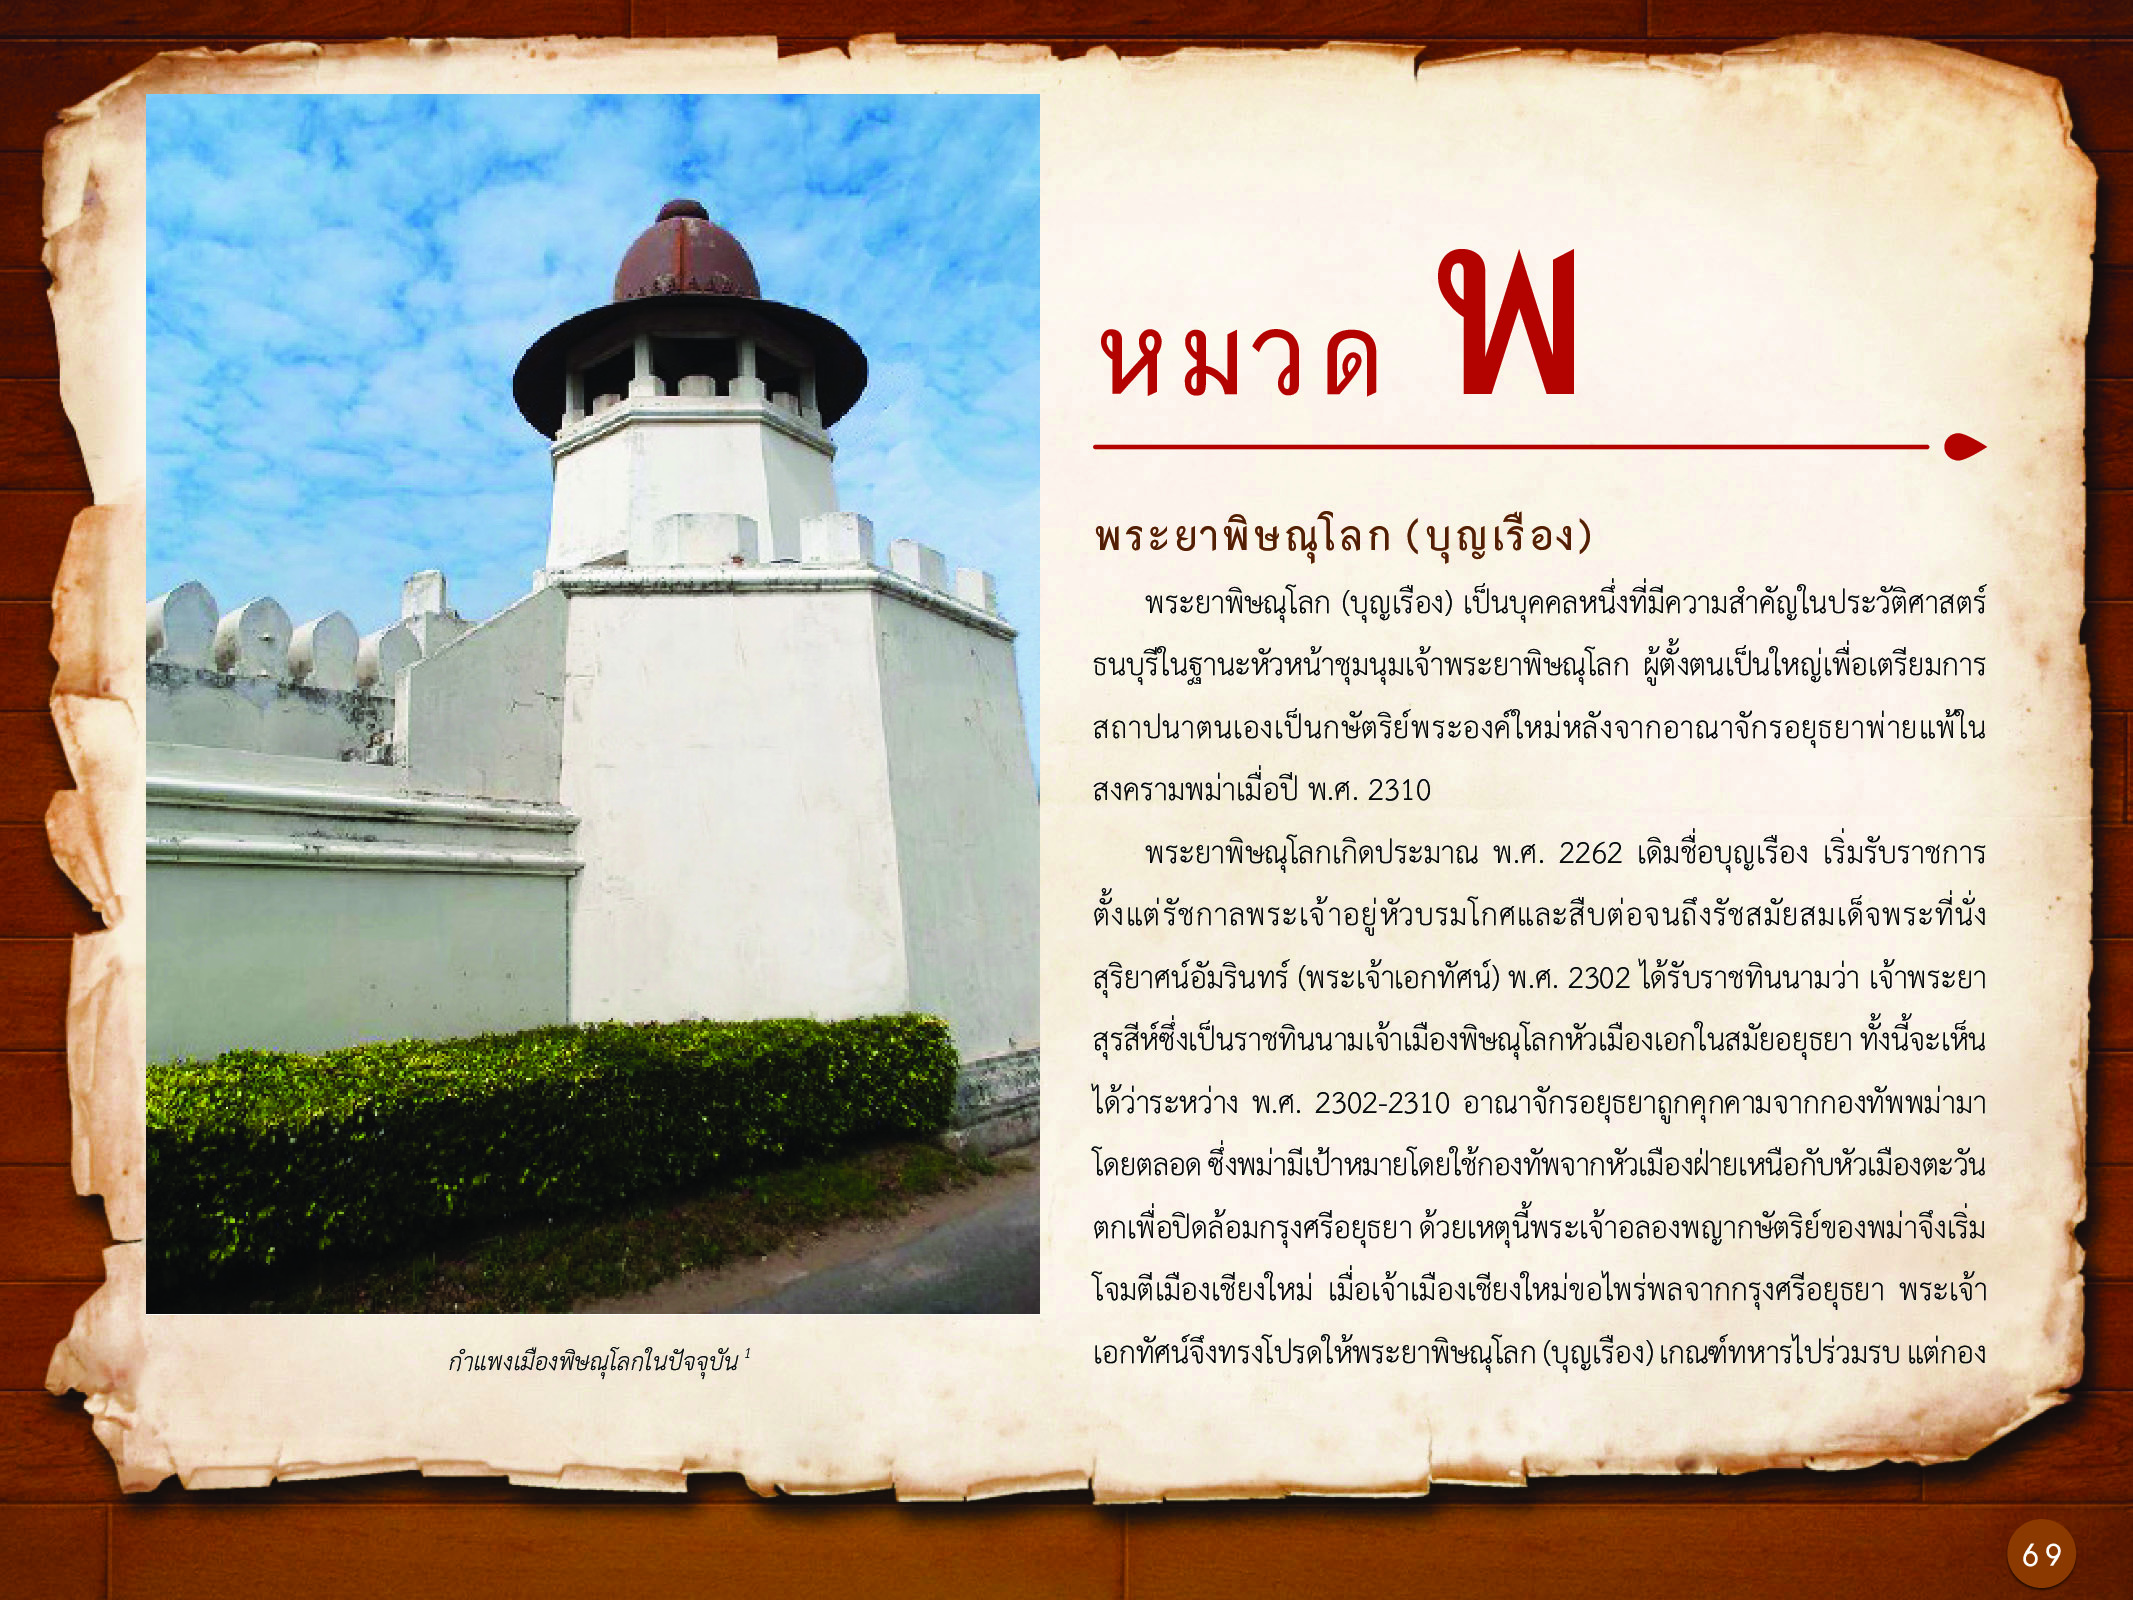 ประวัติศาสตร์กรุงธนบุรี ./images/history_dhonburi/69.jpg